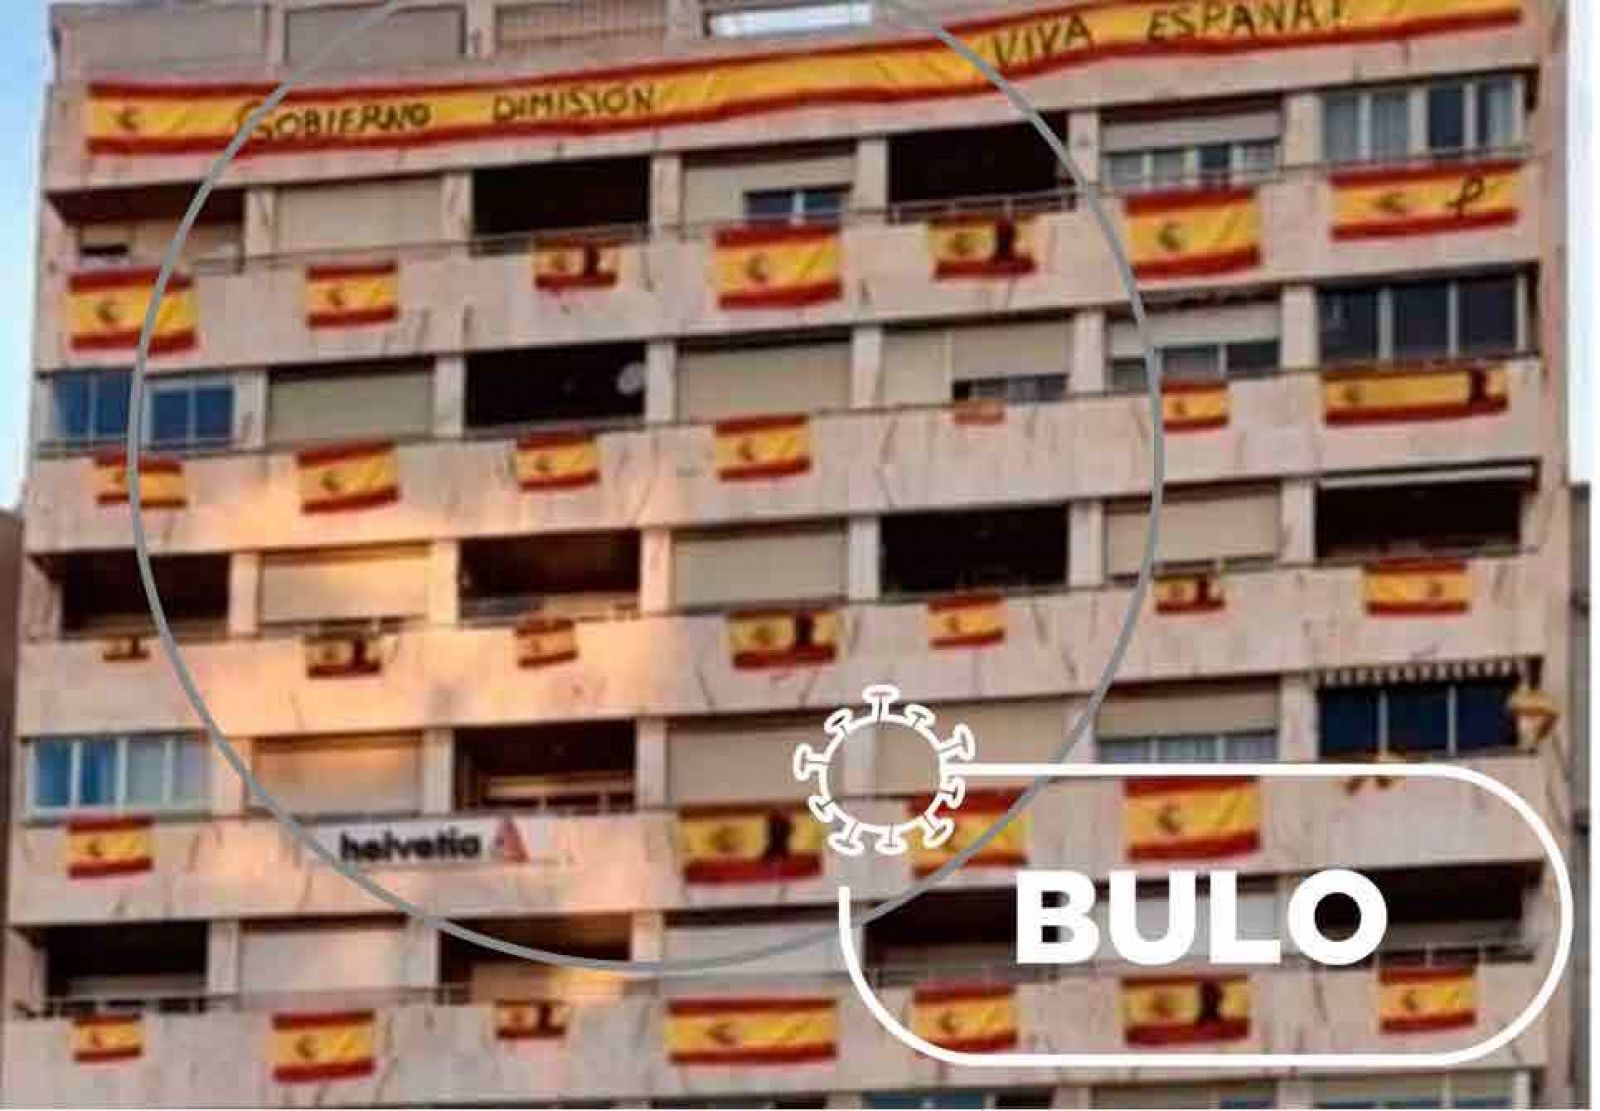 Montaje del edificio con banderas de España en todos sus balcones y sello con la palabra "bulo"